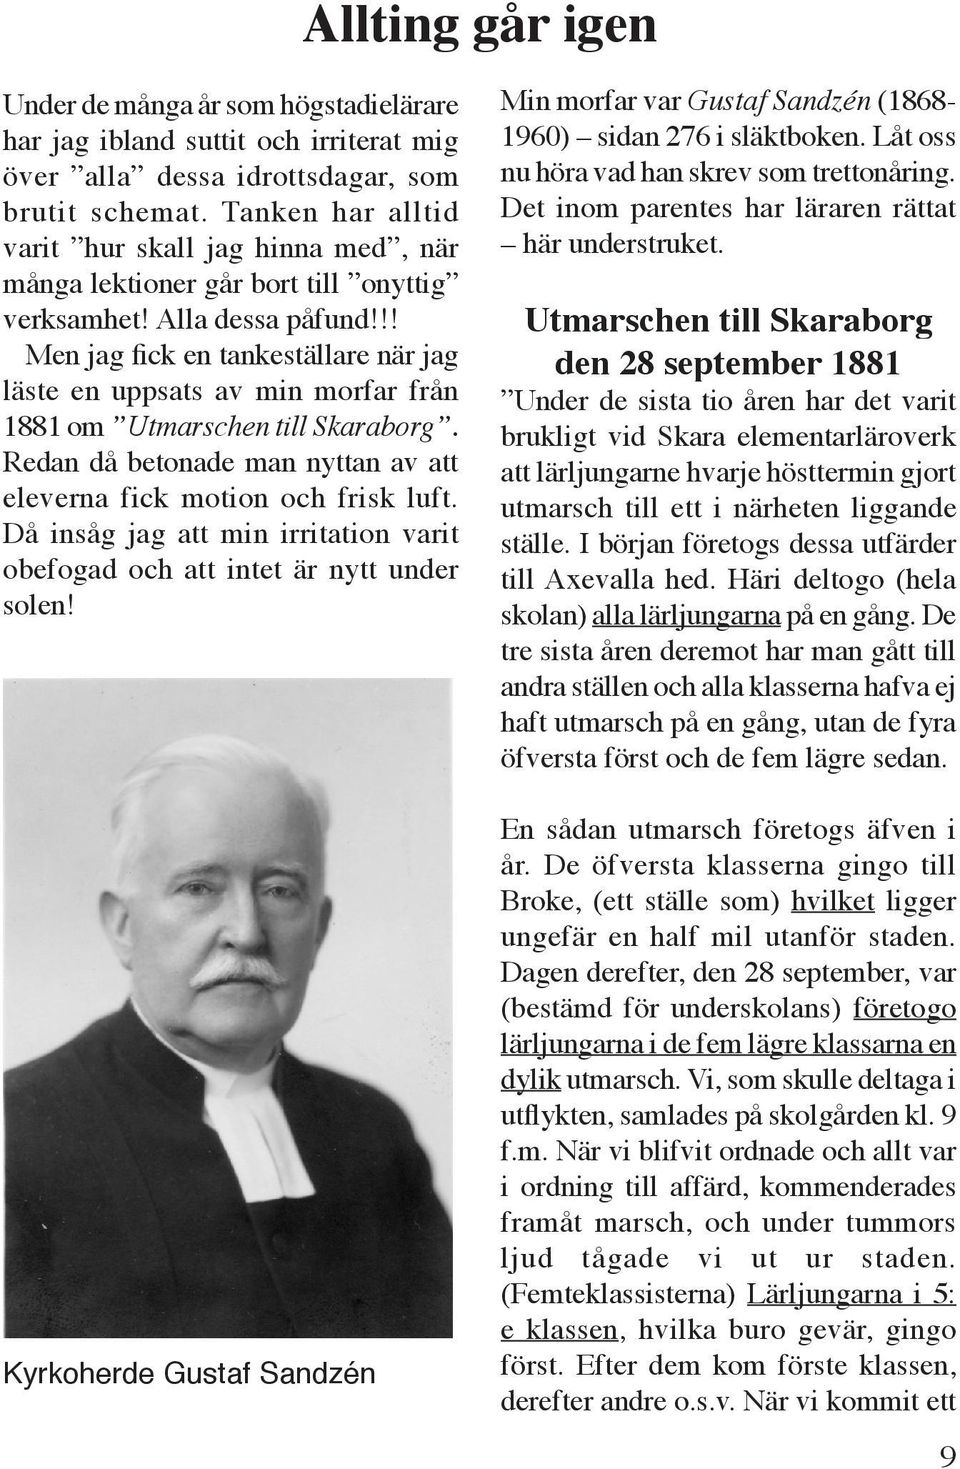 !! Men jag fick en tankeställare när jag läste en uppsats av min morfar från 1881 om Utmarschen till Skaraborg. Redan då betonade man nyttan av att eleverna fick motion och frisk luft.